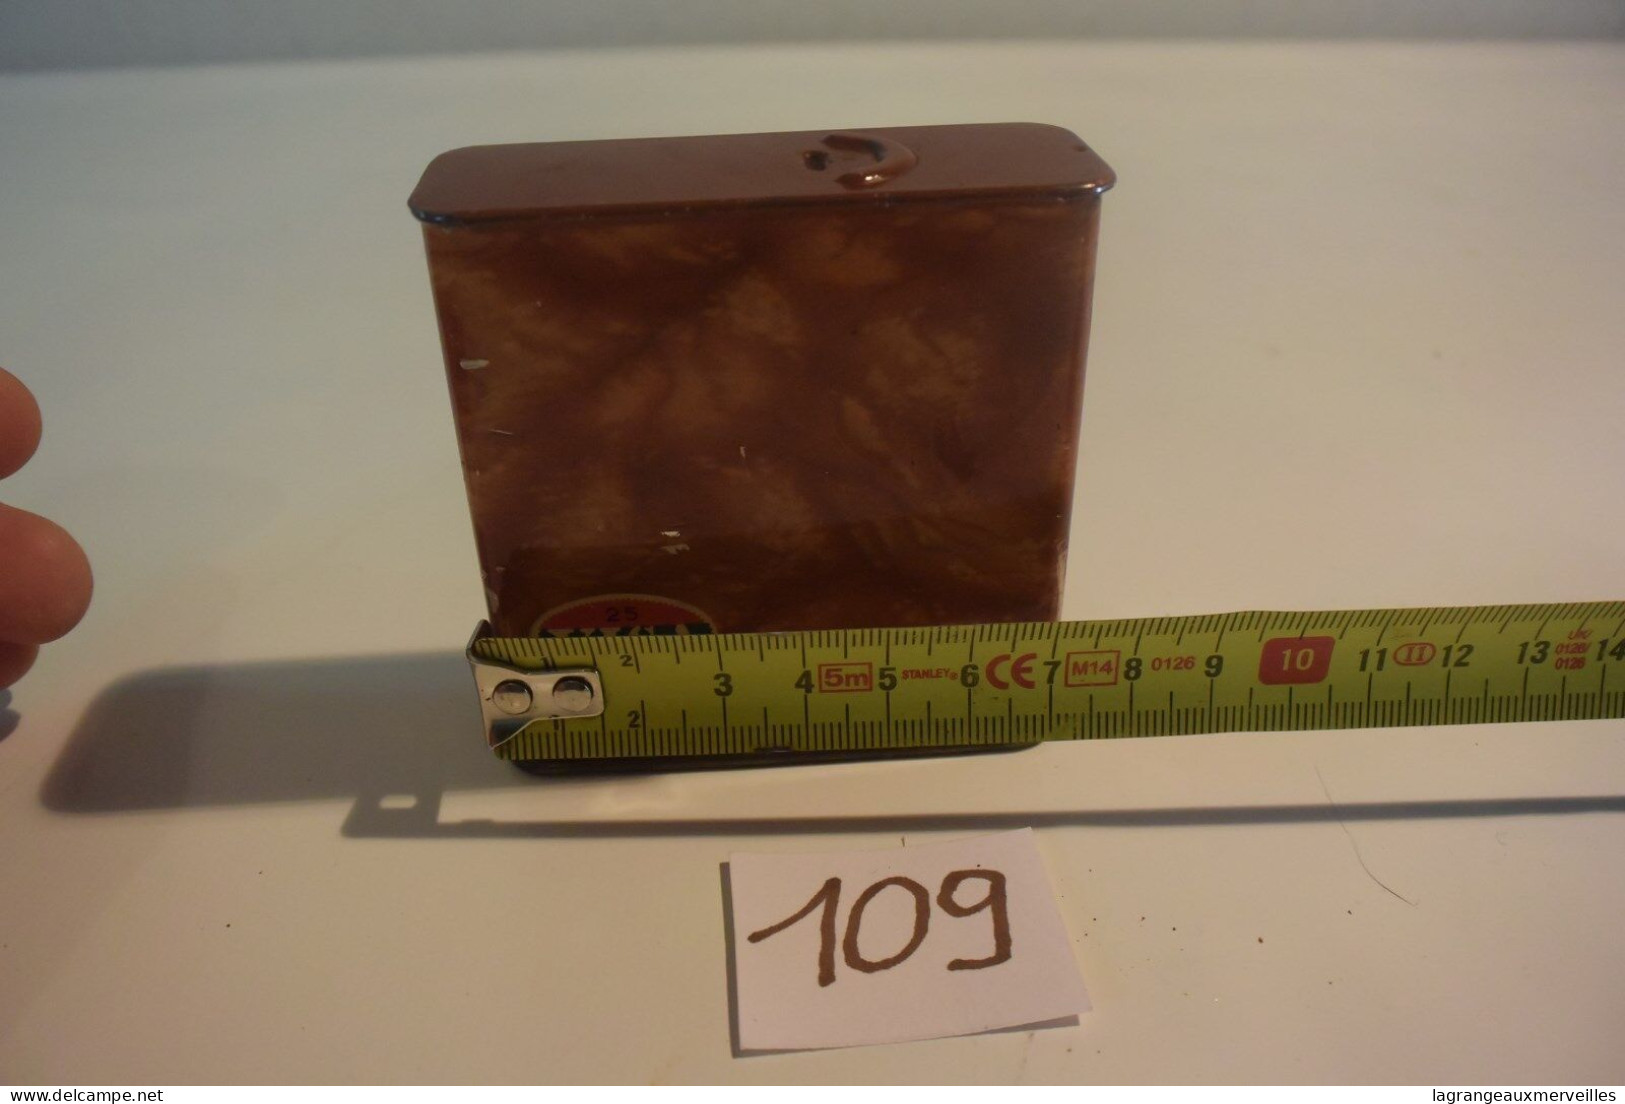 C109 Ancienne Boite En Métal Visa Pour Filtre 70' - Empty Tobacco Boxes